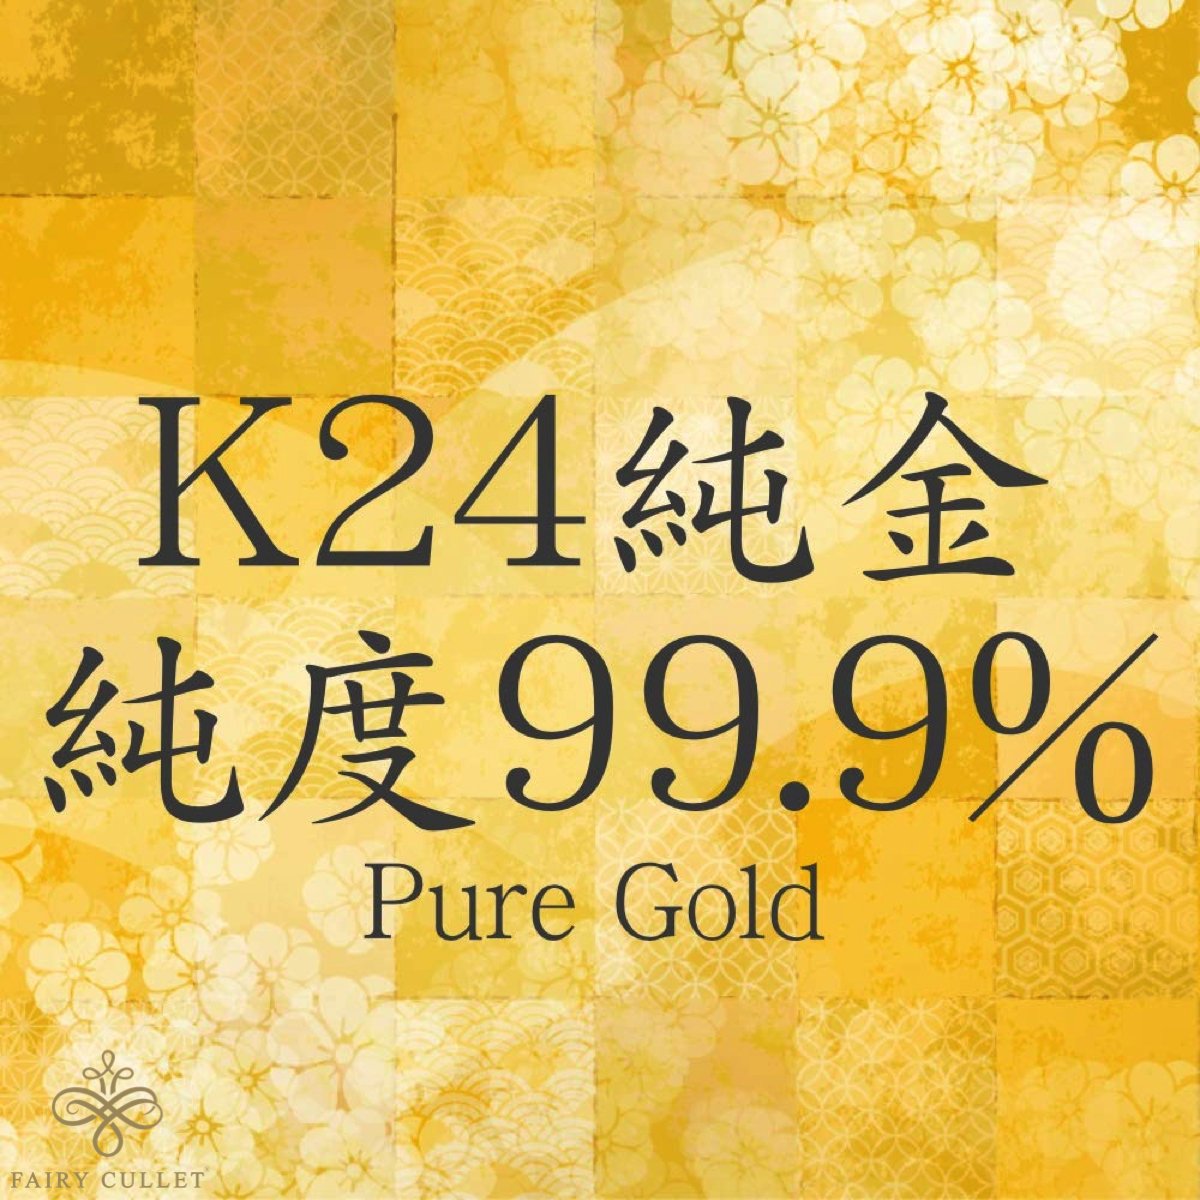 24金ネックレス K24 スクリューチェーン 日本製 純金 検定印 1.7g 42cm 引き輪 - 喜平ジュエリーの専門店 FAIRY CULLET(フェアリーカレット)